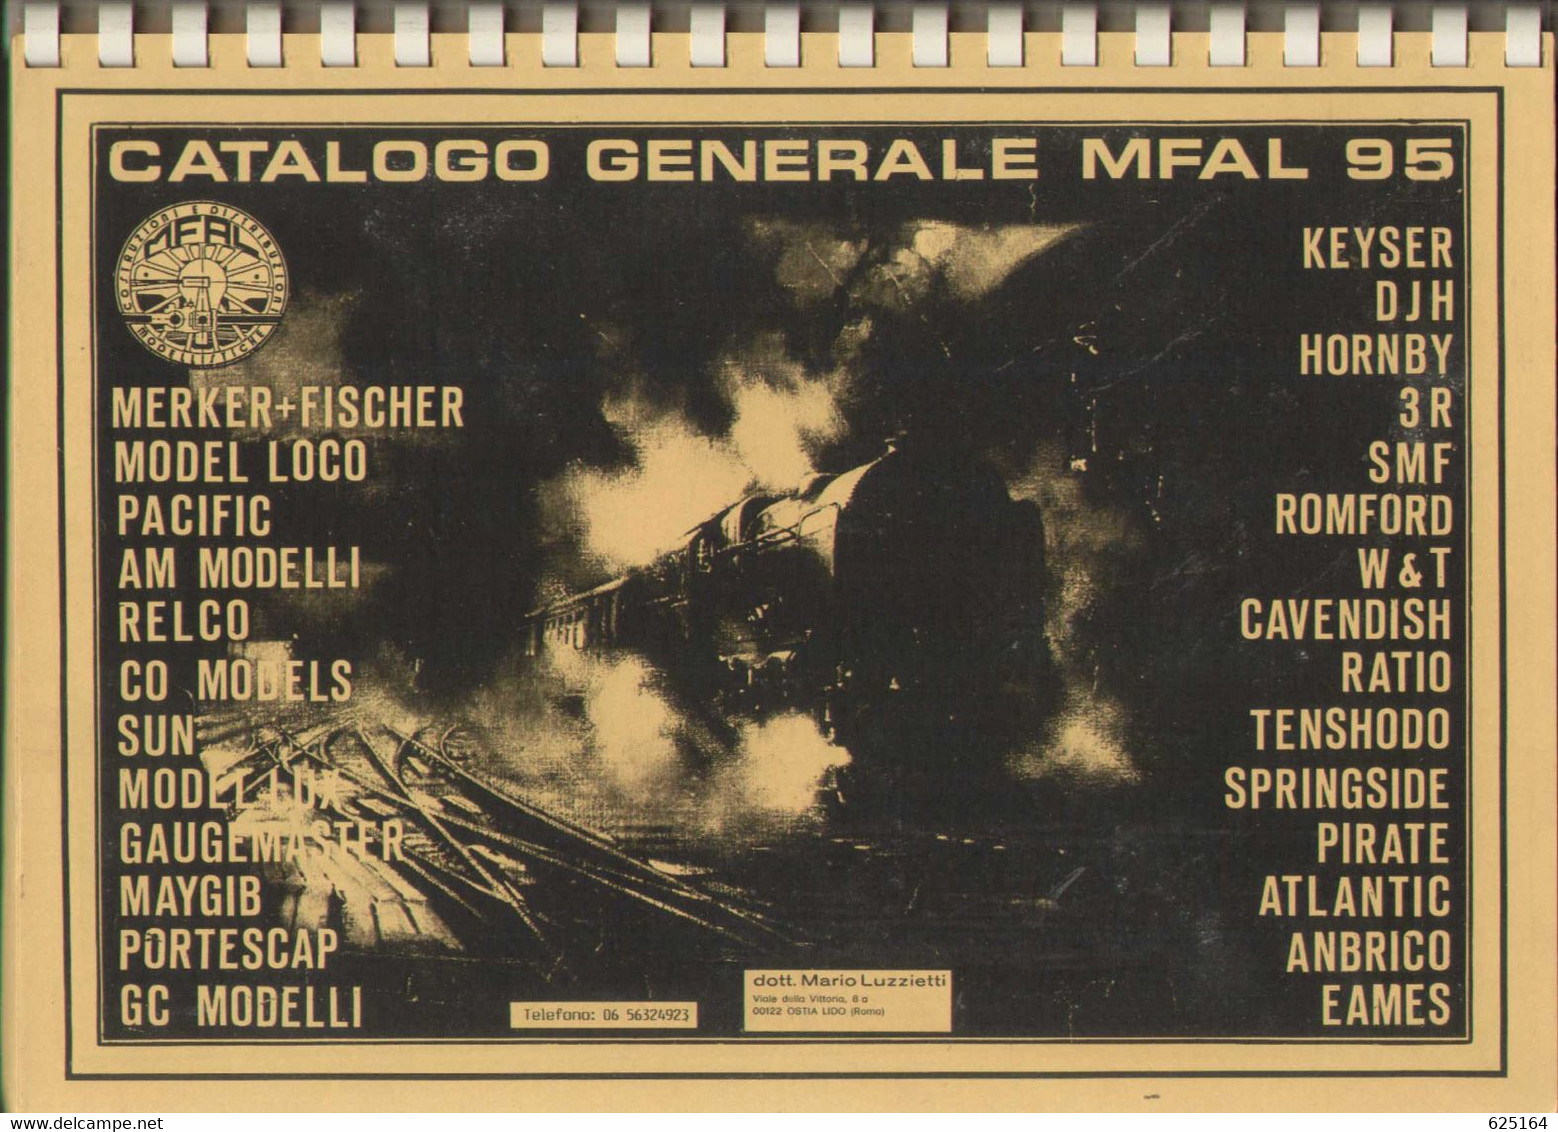 Catalogue MFAL 1995 MERKER+FISCHER -MODEL LOCO -DJH TENSHODO Etc Luzzietti  - En Italien - Unclassified